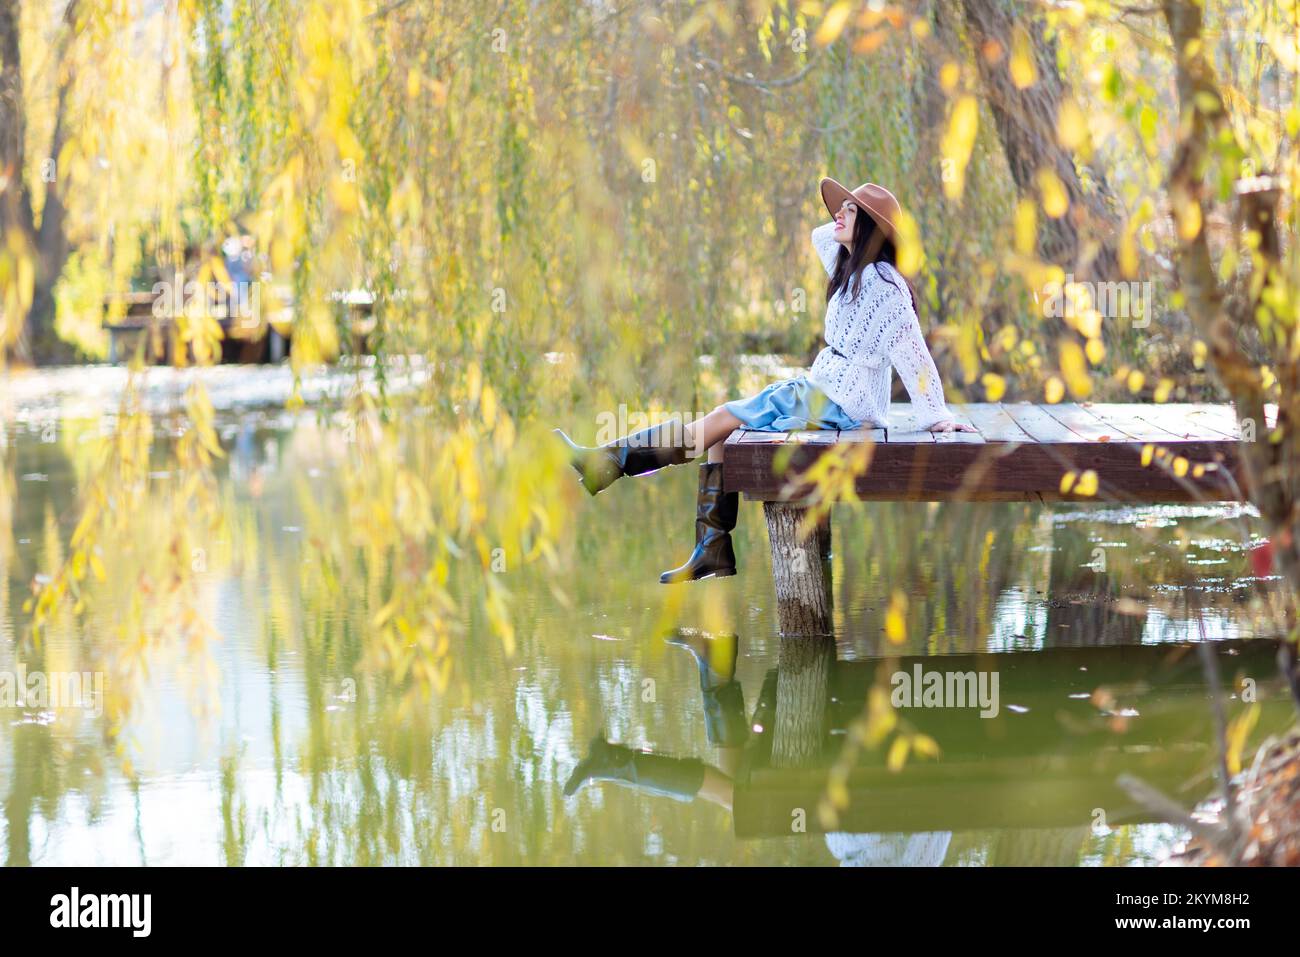 Herbstsee-Frau. Sie sitzt im Herbst an einem Teich auf einem hölzernen Pier und bewundert die Natur. Das Konzept des Tourismus, Wochenenden außerhalb der Stadt. Stockfoto